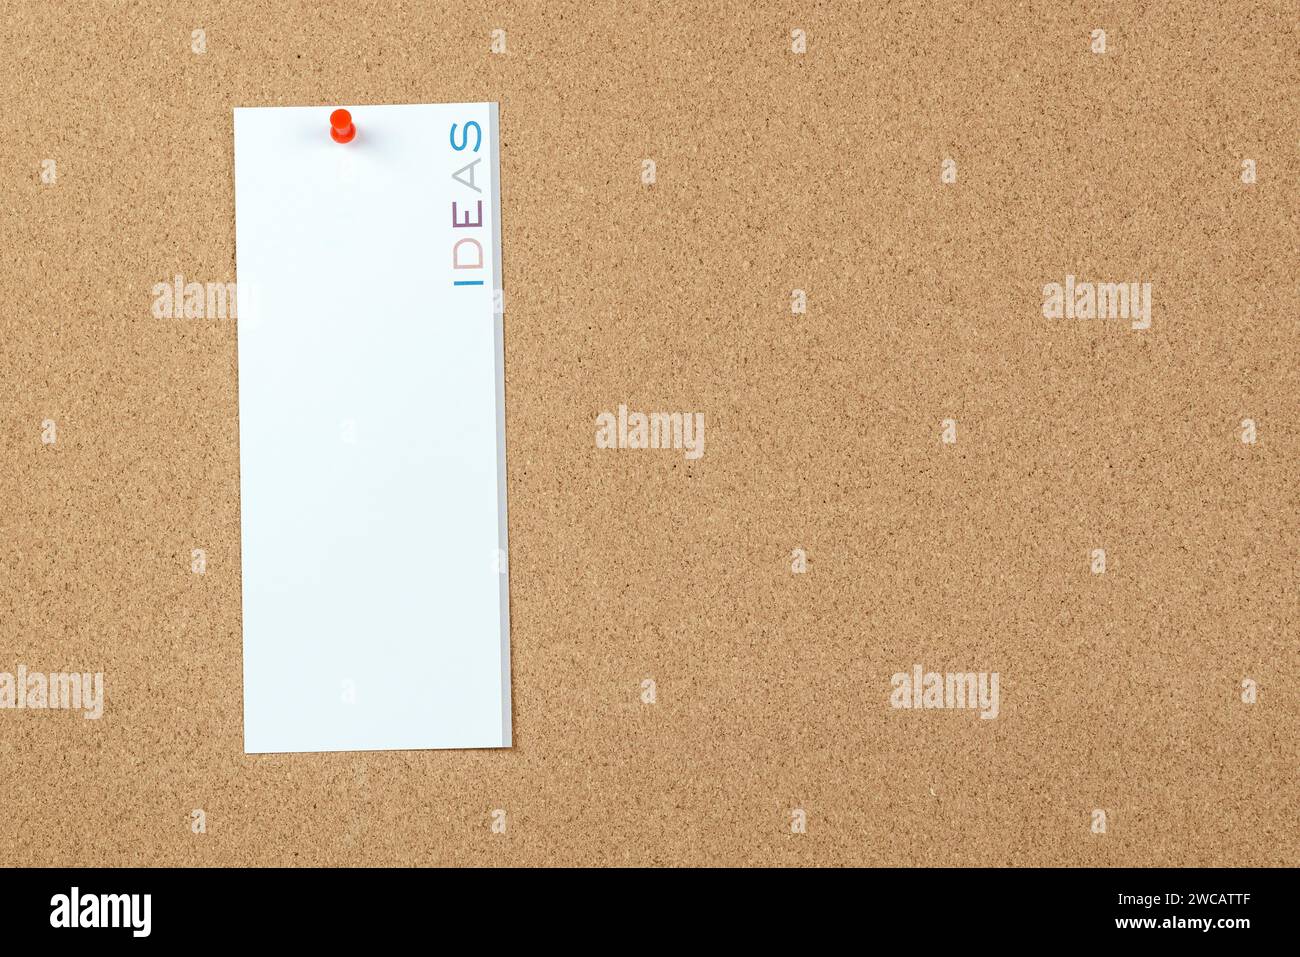 Leere Notiz mit dem Wort „Ideen“, das vertikal auf einem Korkbrett gedruckt ist. Kopierbereich. Stockfoto